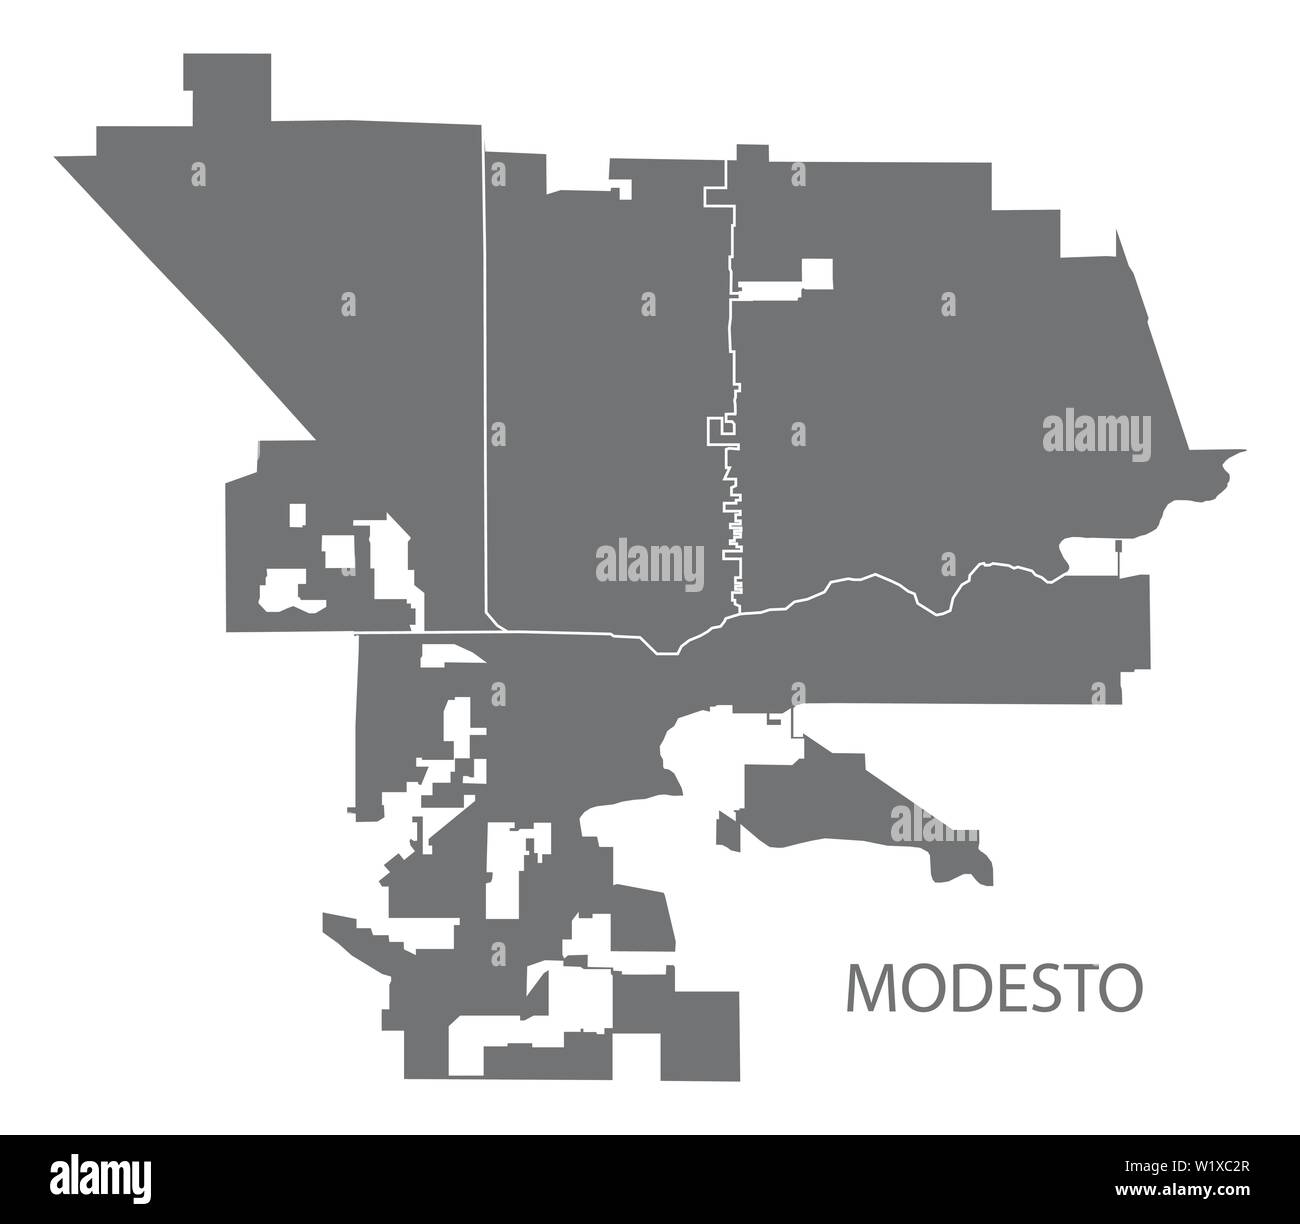 Modesto Kalifornien Stadtplan mit nachbarschaften Grau Abbildung silhouette Form Stock Vektor